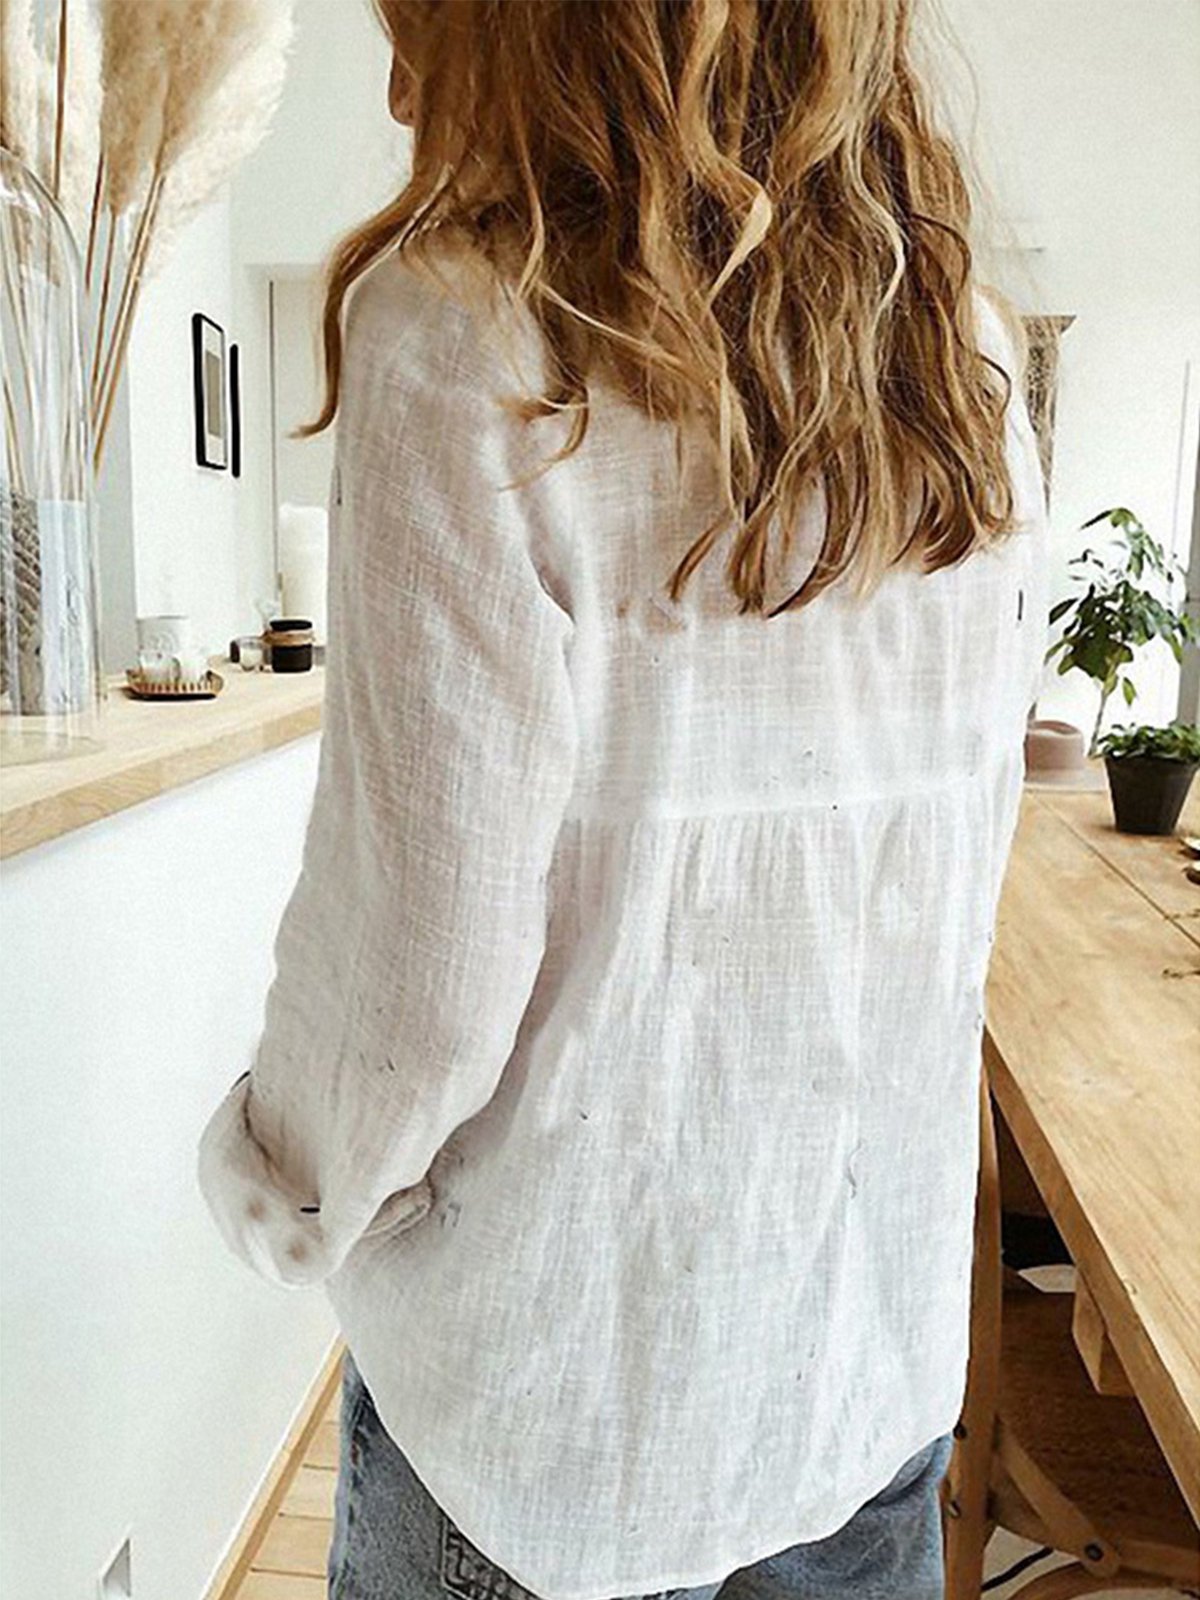 Women's Shirt Blouse Linen Plain Solid Colour Long Sleeve Casual Shirt Collar Regular Fit Spring Fall